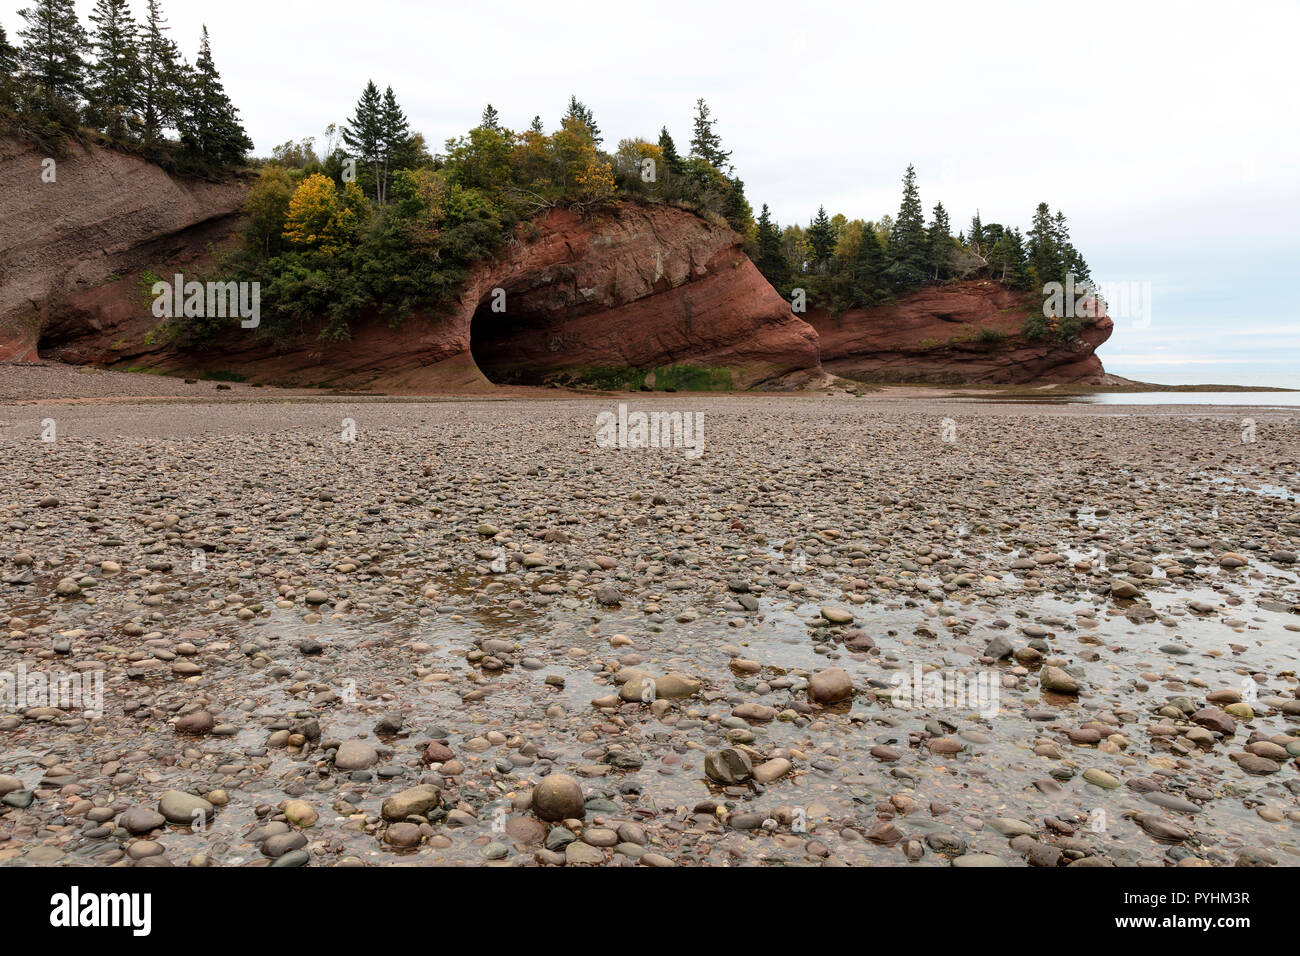 Rosso scogliere di arenaria, spiaggia, bassa marea, golfo di St Lawrence, Prince Edward Island, Canada, da James D. Coppinger/Dembinsky Foto Assoc Foto Stock